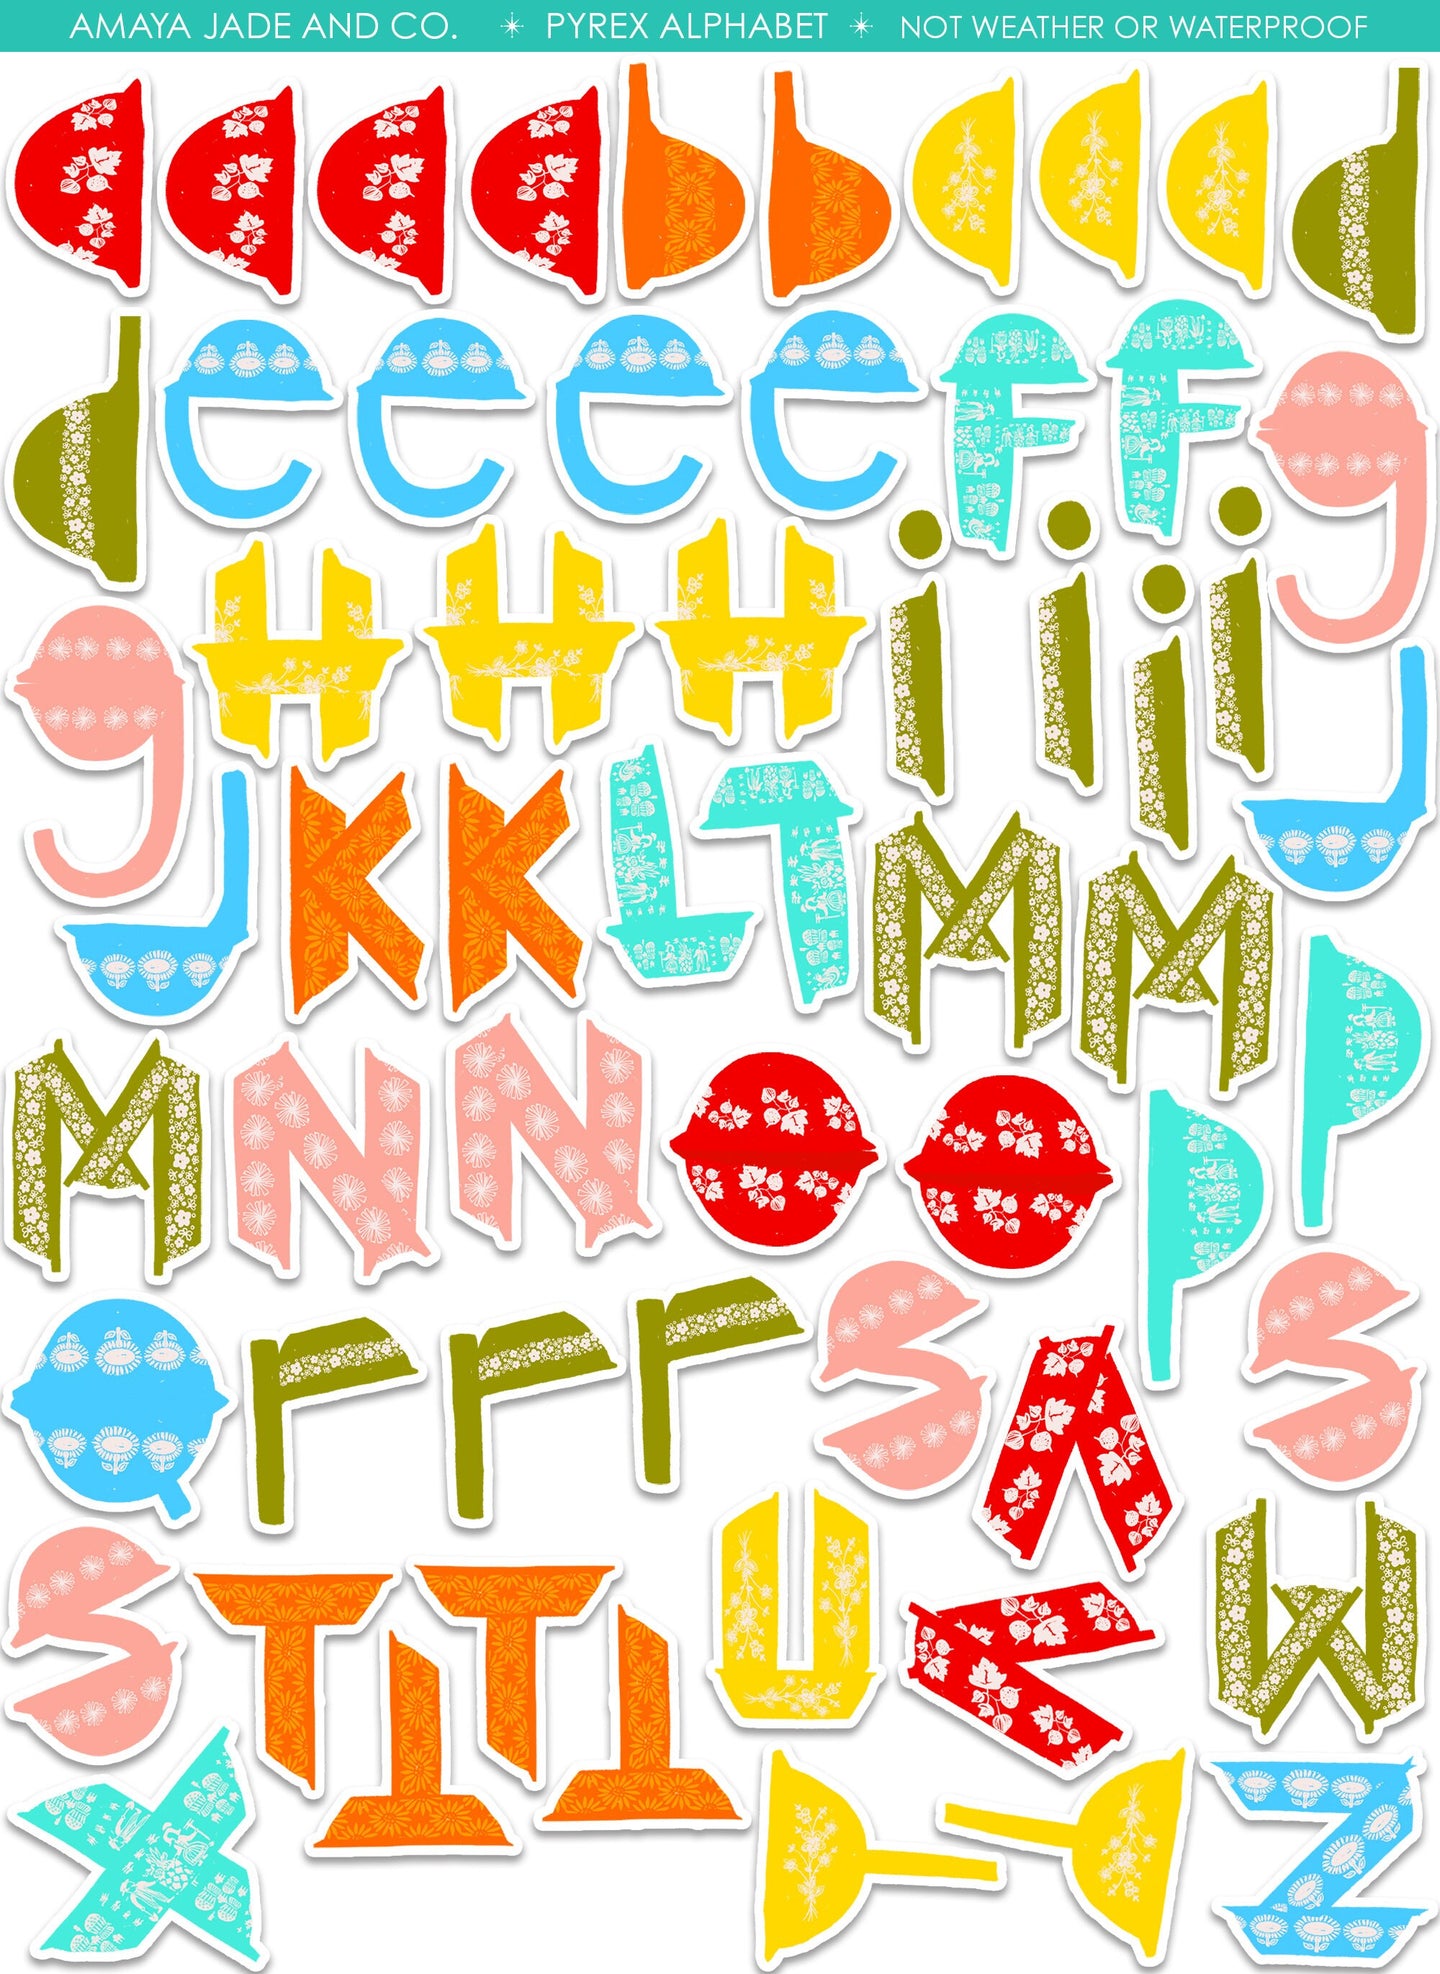 Pyrex Alphabet Art Sticker Set